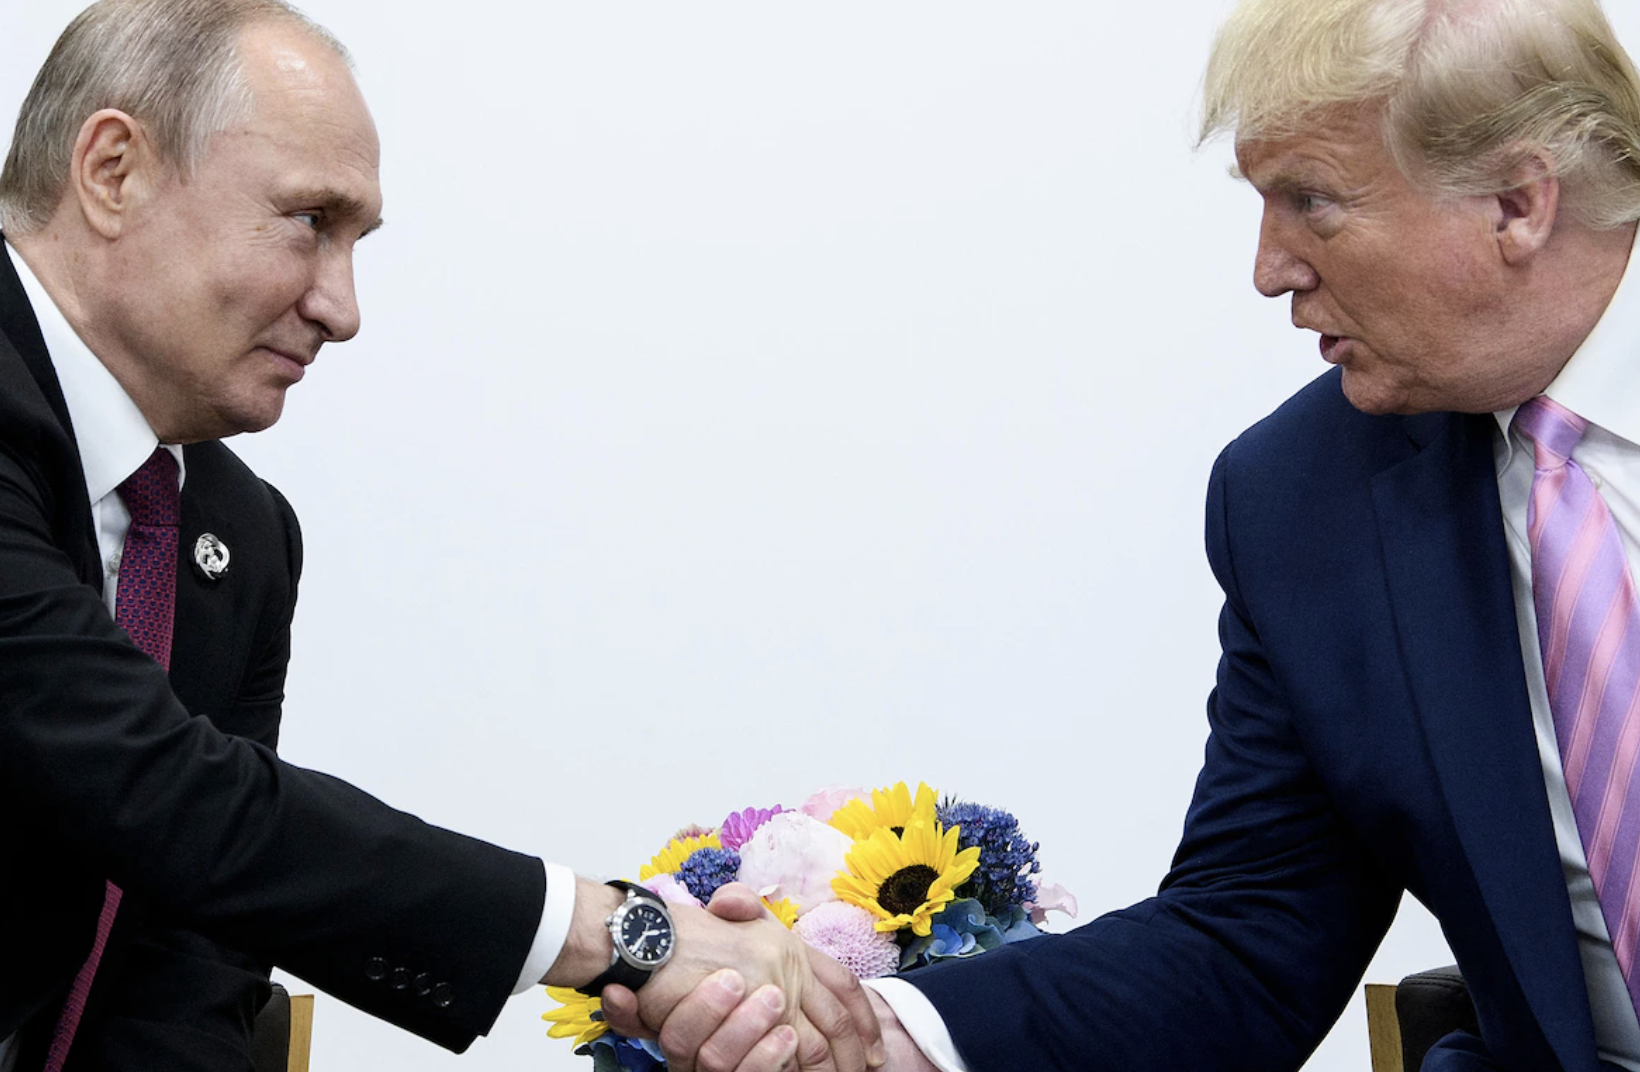 ↑特朗普担任美国总统期间与俄罗斯总统普京建立了良好的关系